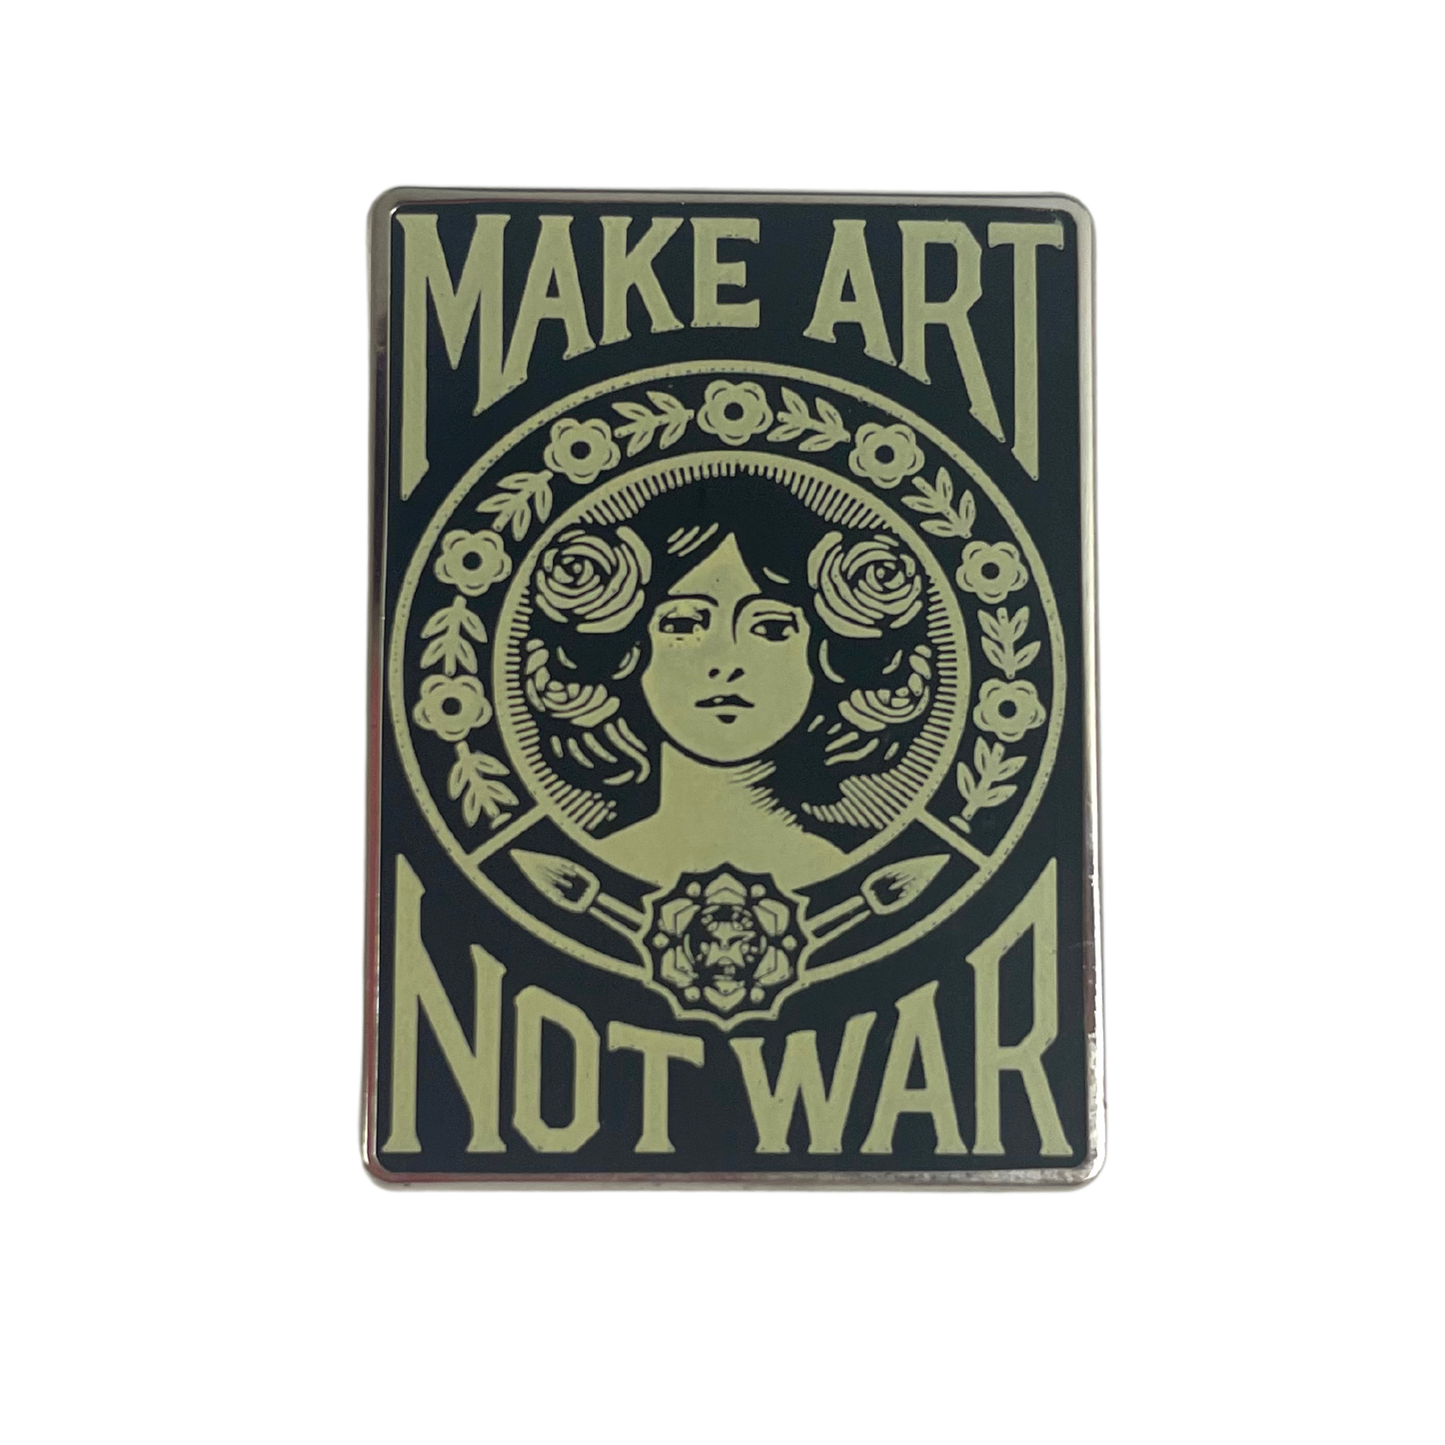 "Make Art Not War"